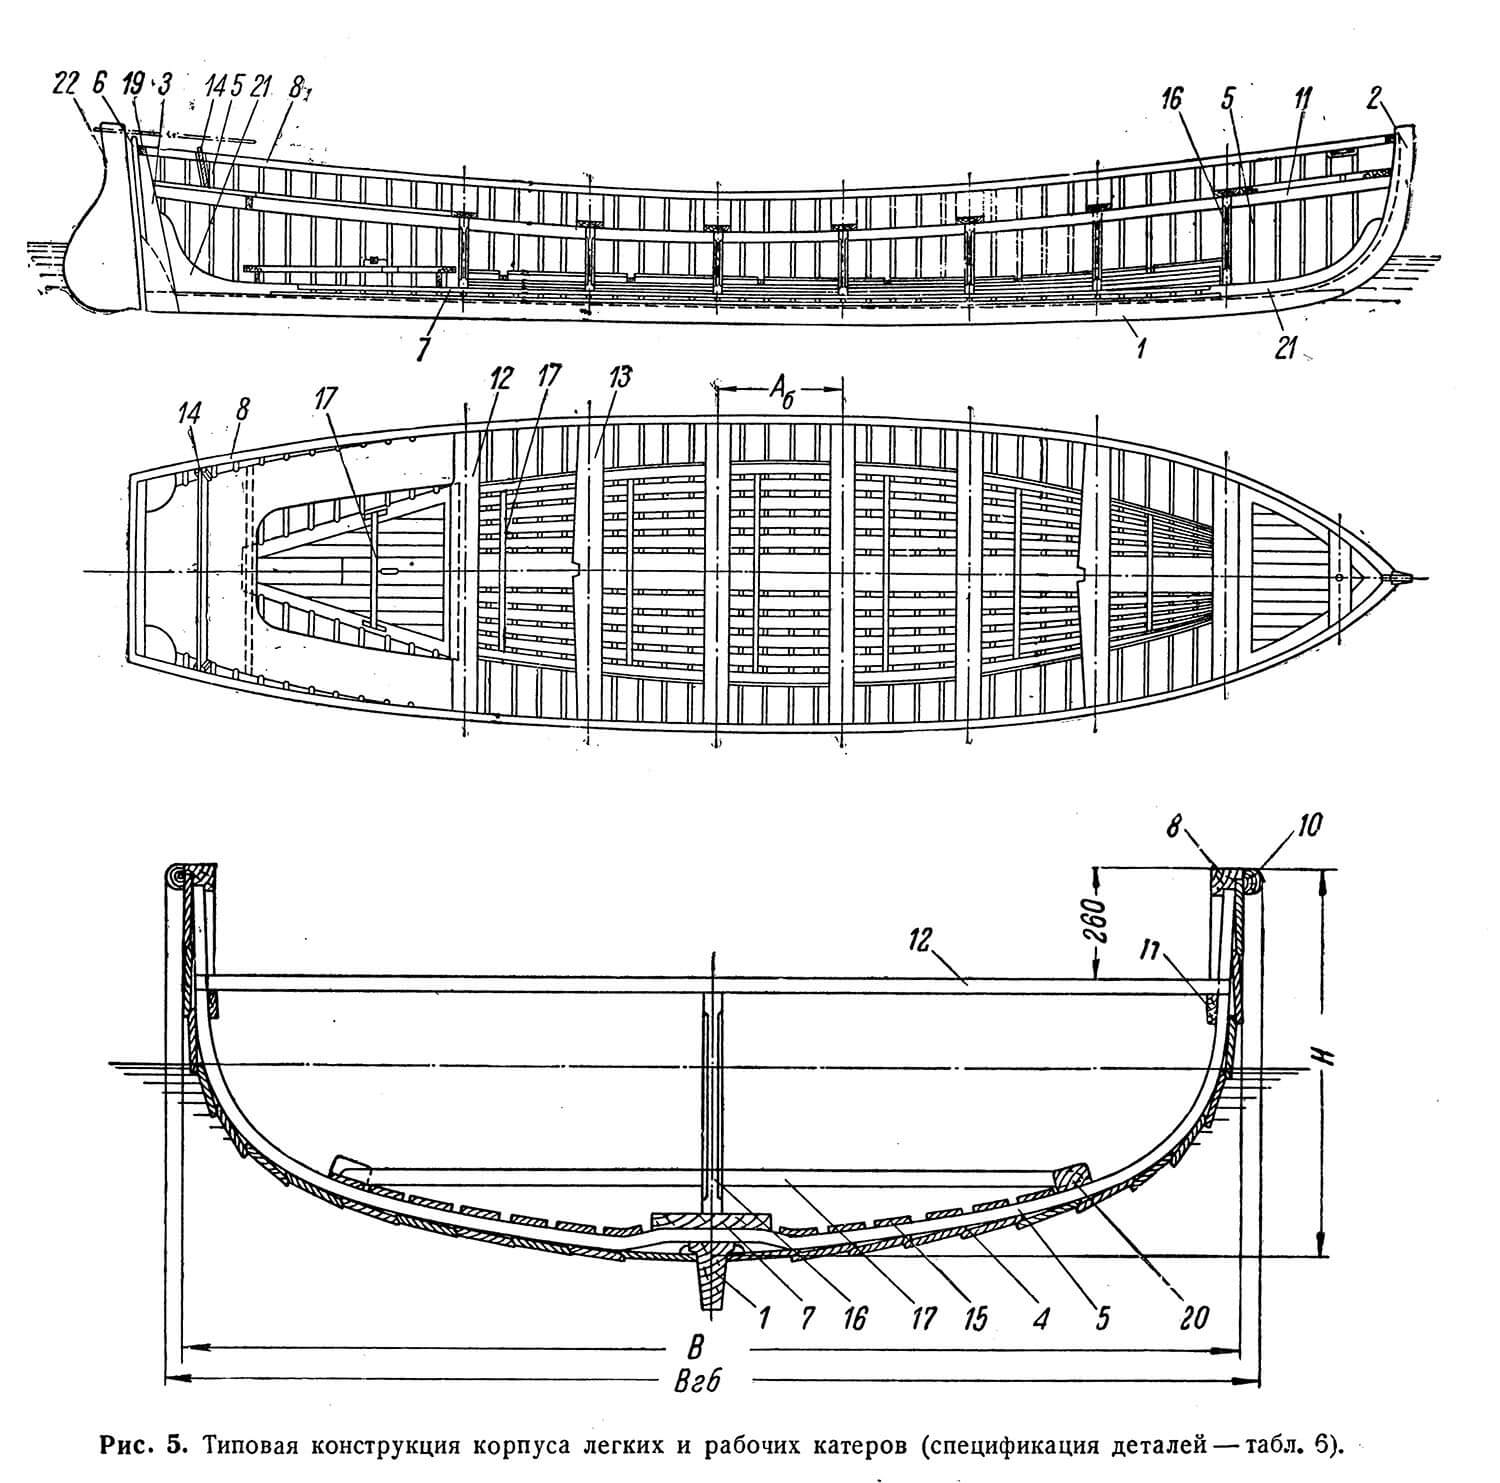 Типовая конструкция корпуса легких и рабочих катеров